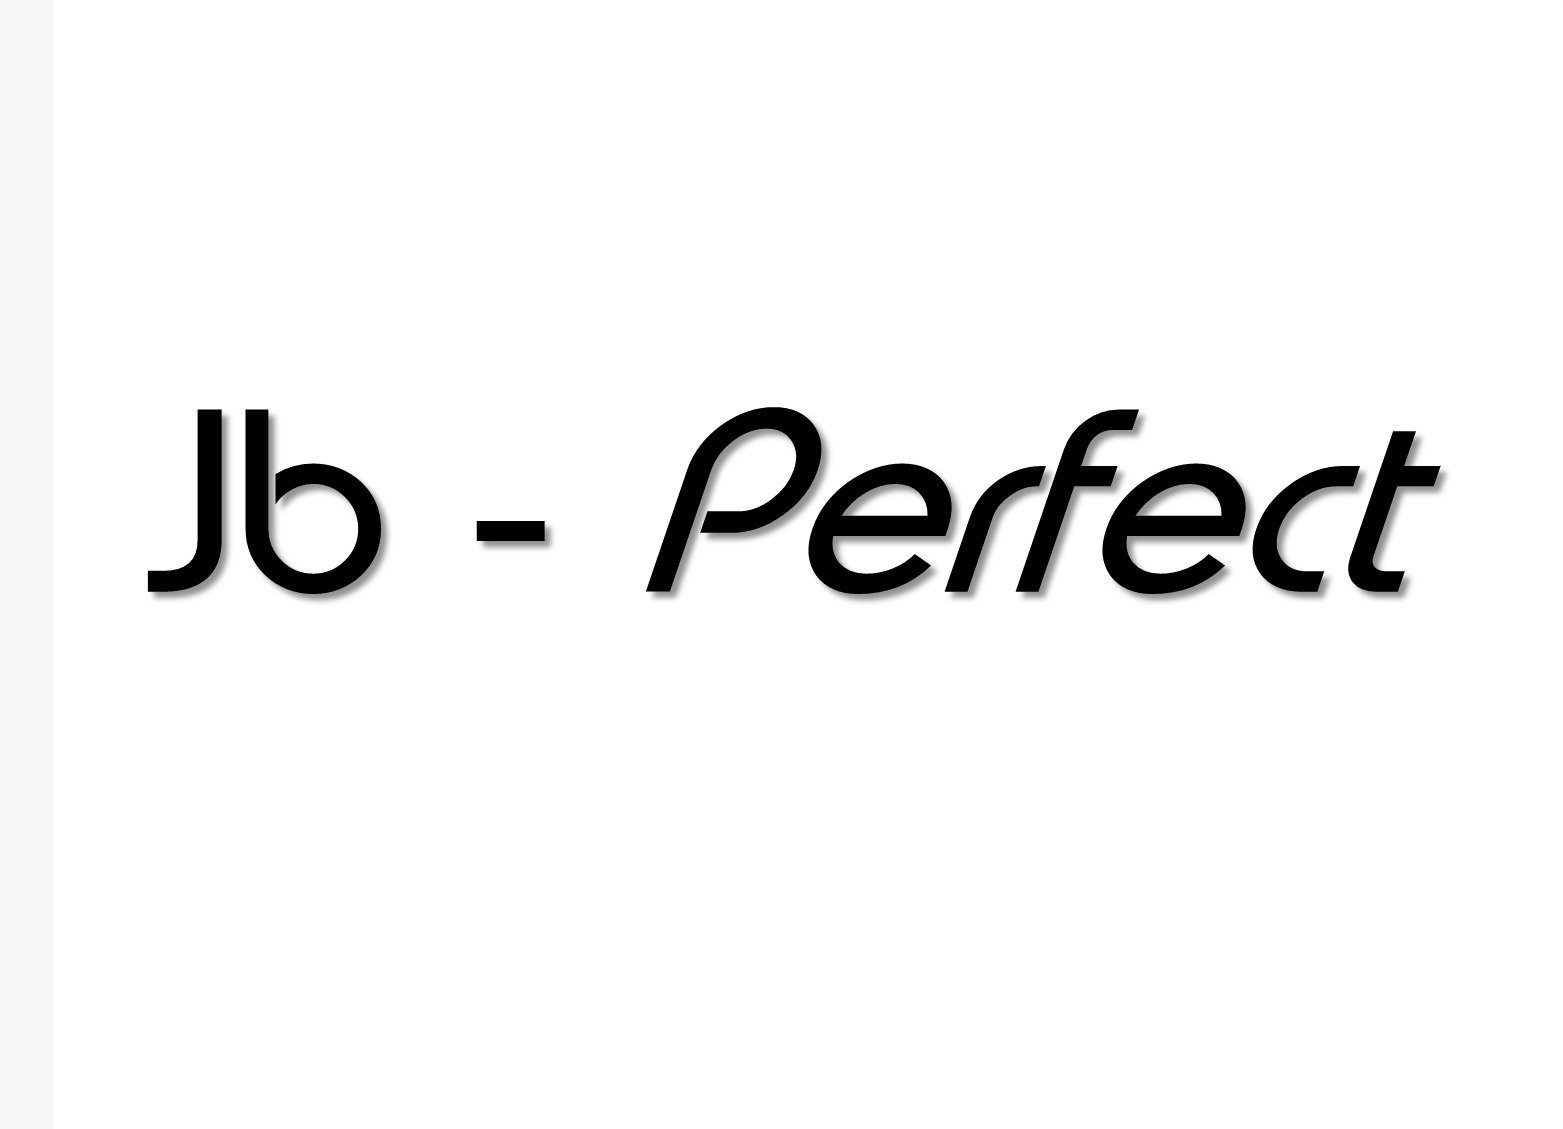 Jb - Perfect